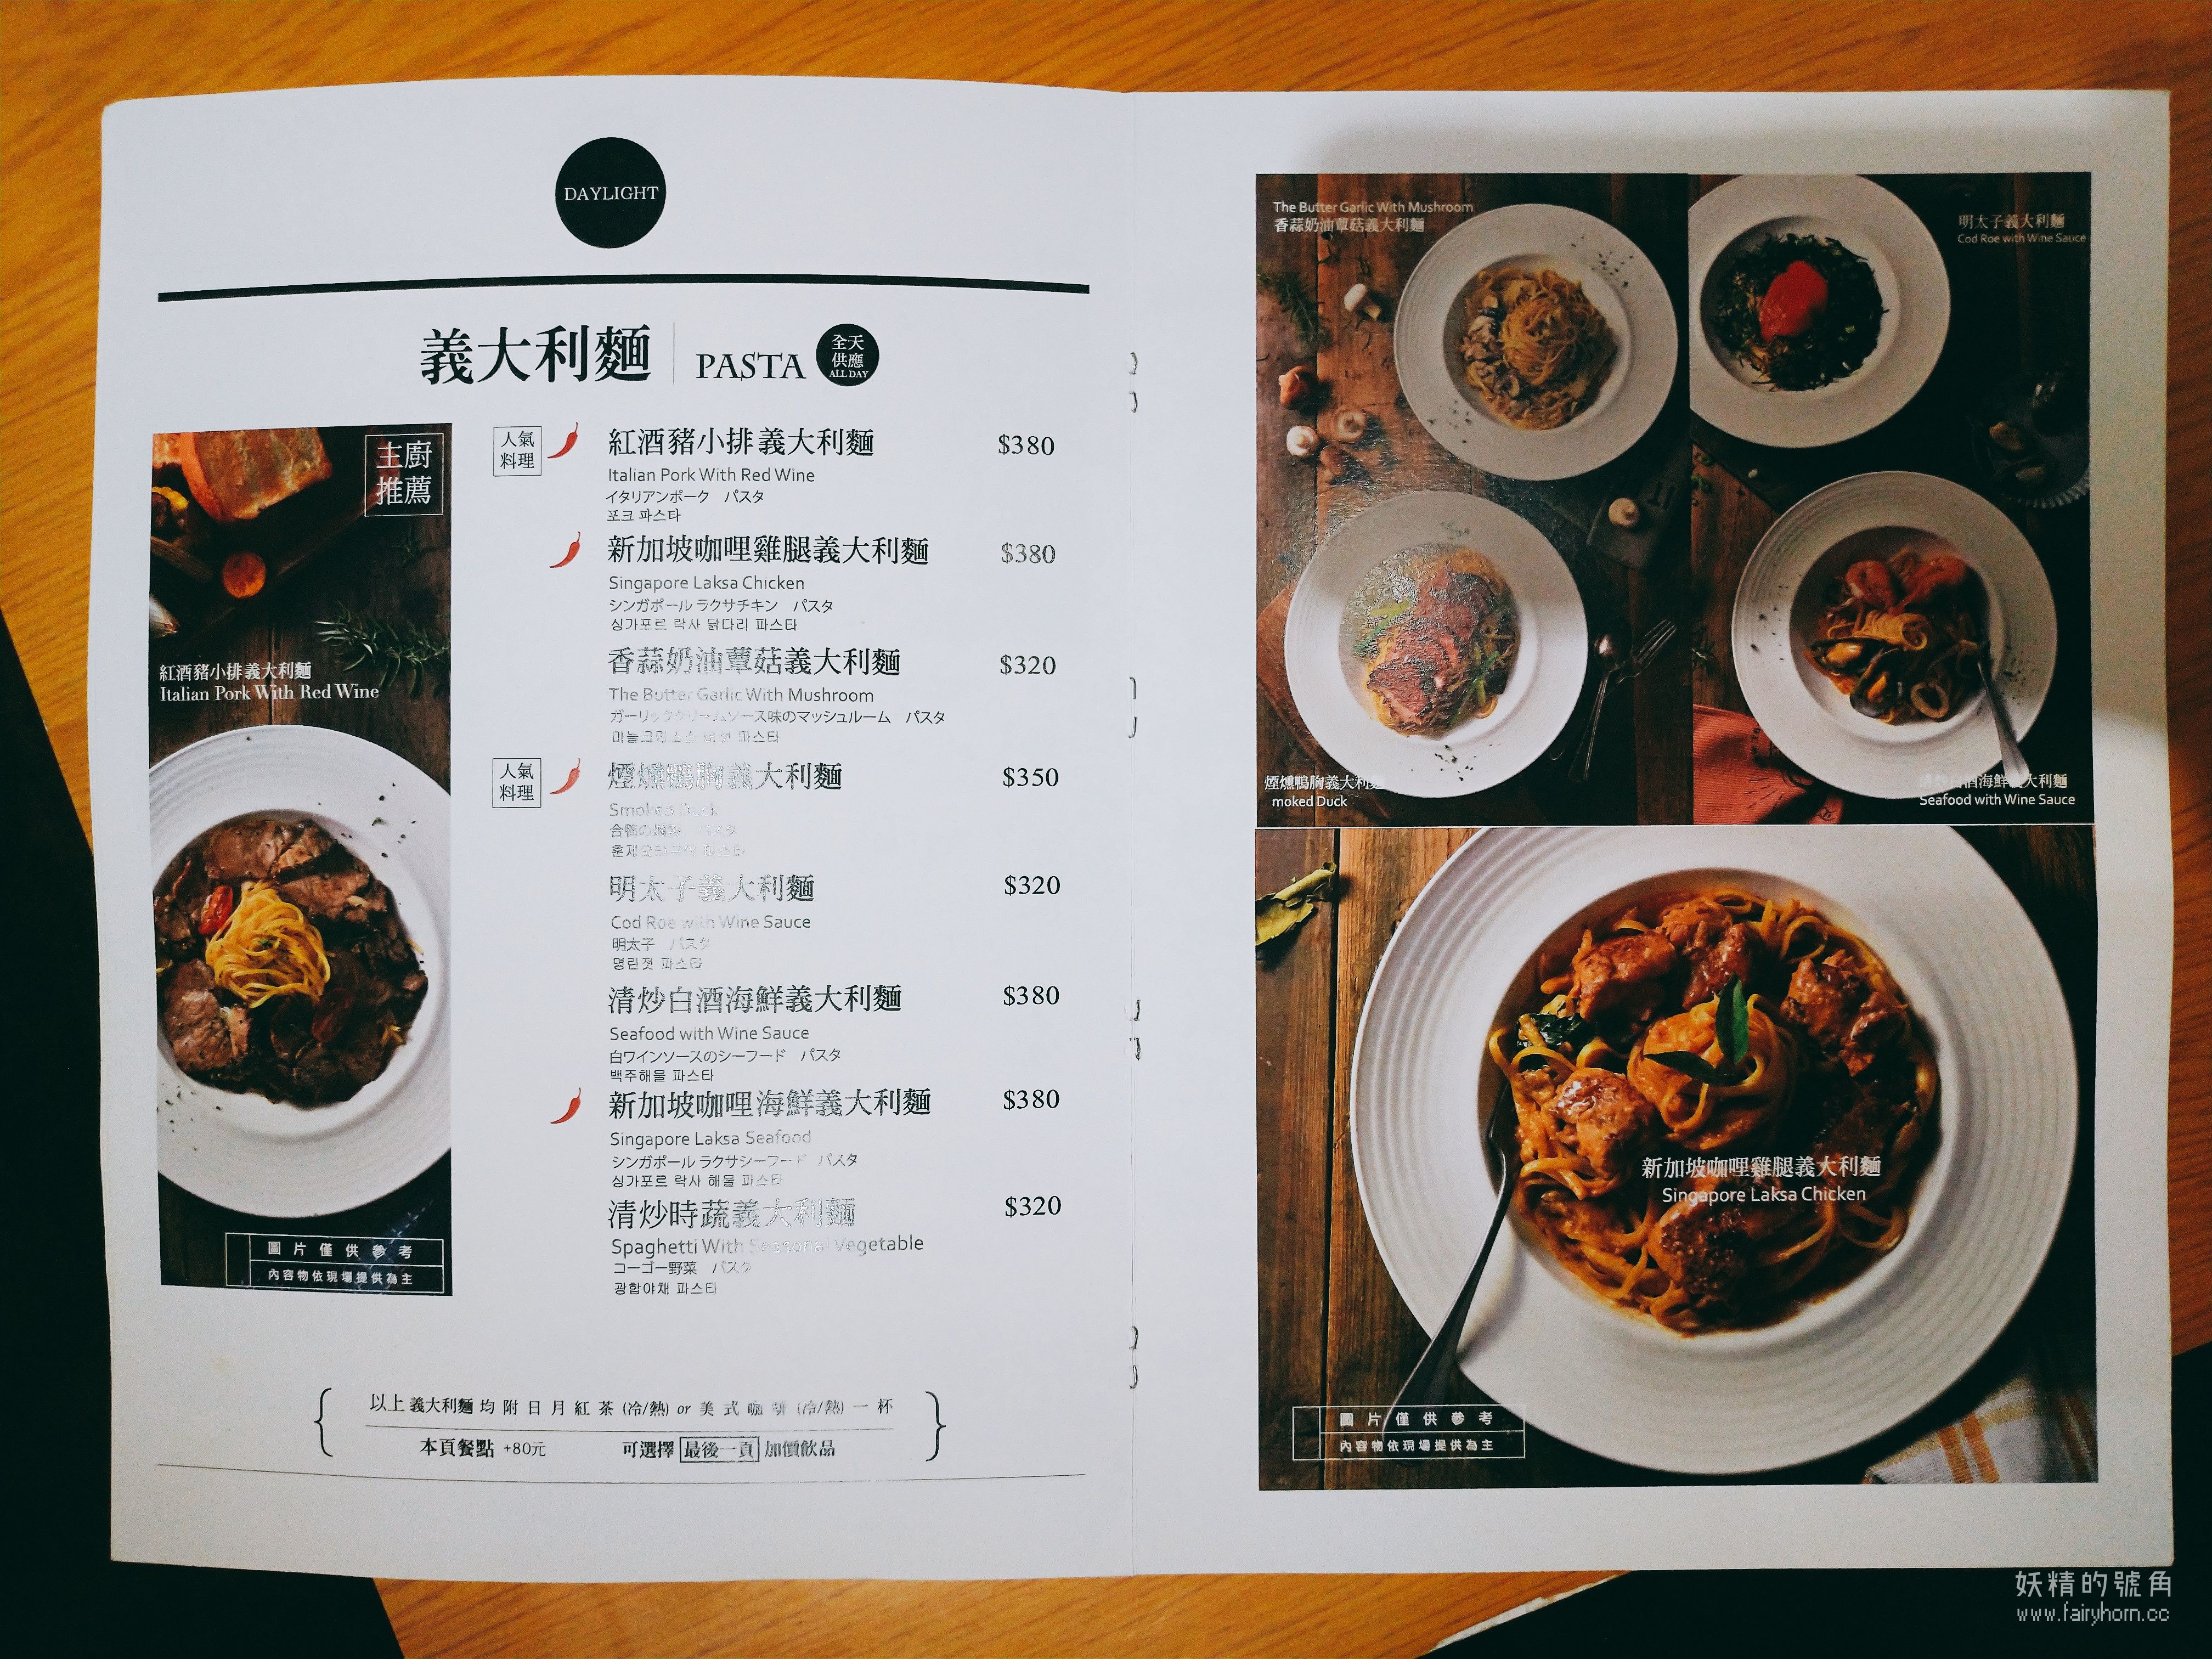 2019 04 05 22 02 48 result - 台北早午餐 | Daylight 光合箱子東門店，在寧靜小巷裡體會慢食愉悅